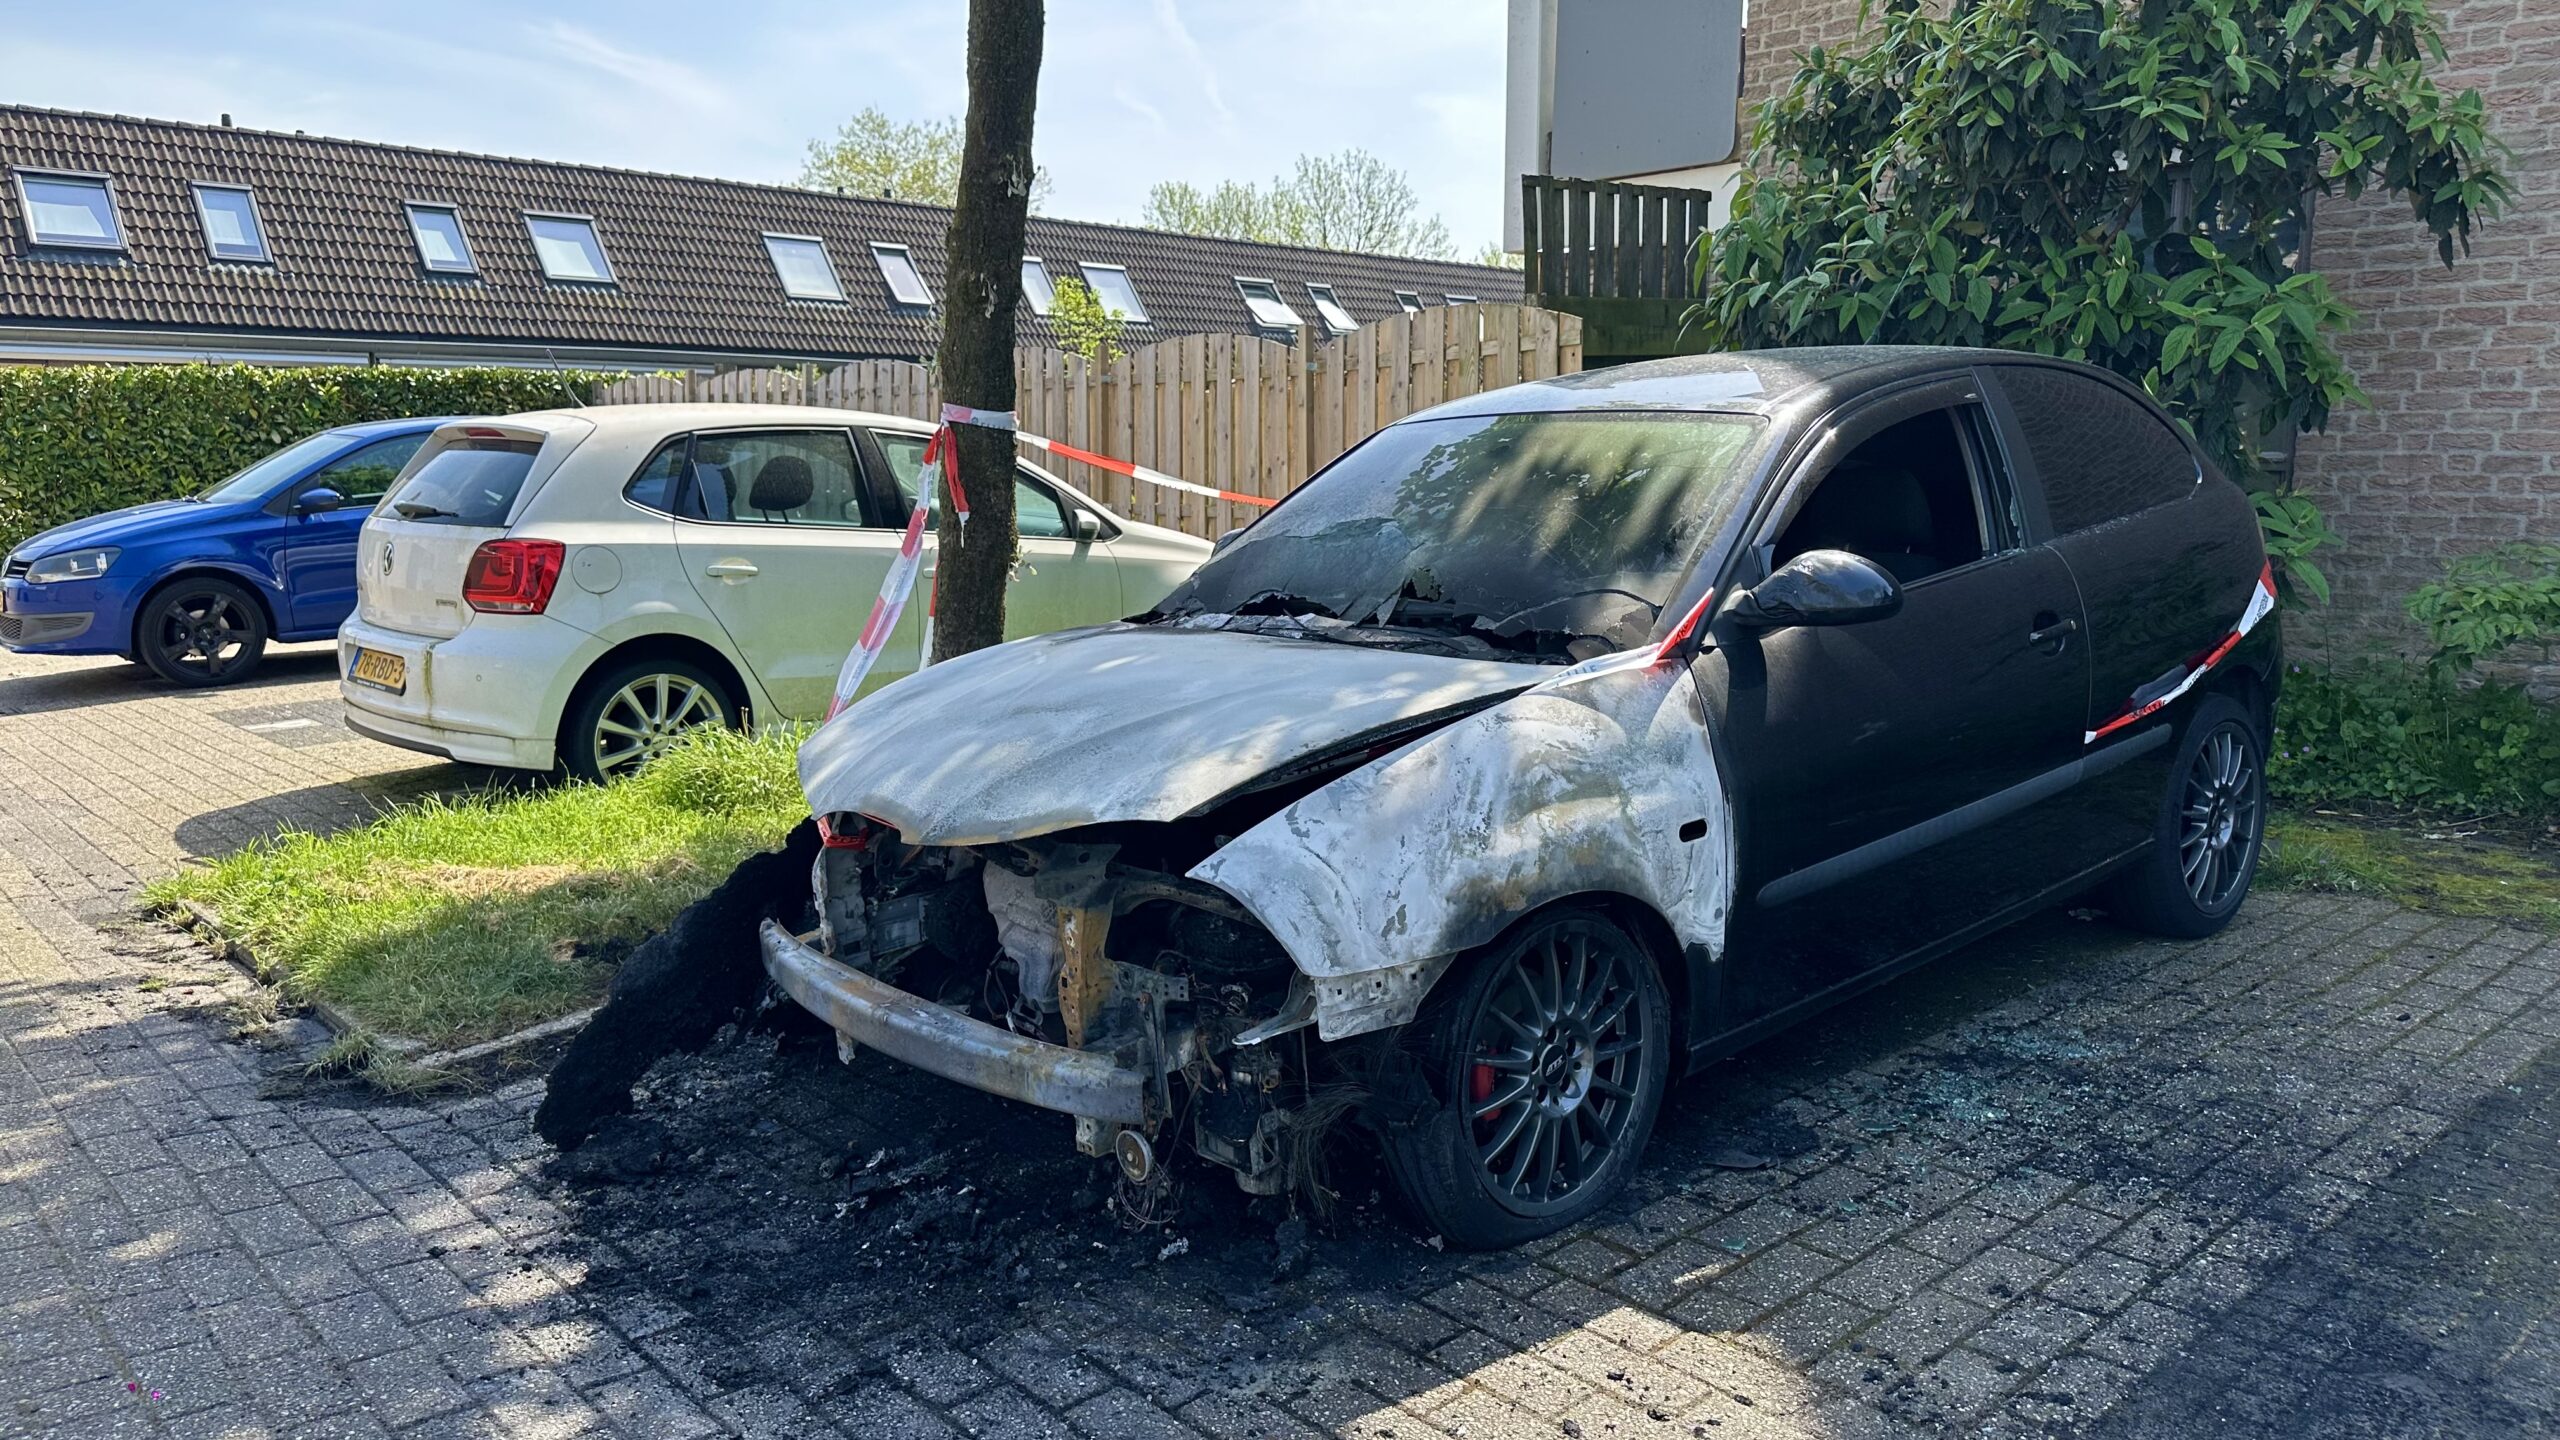 Opnieuw een autobrand in Arnhem